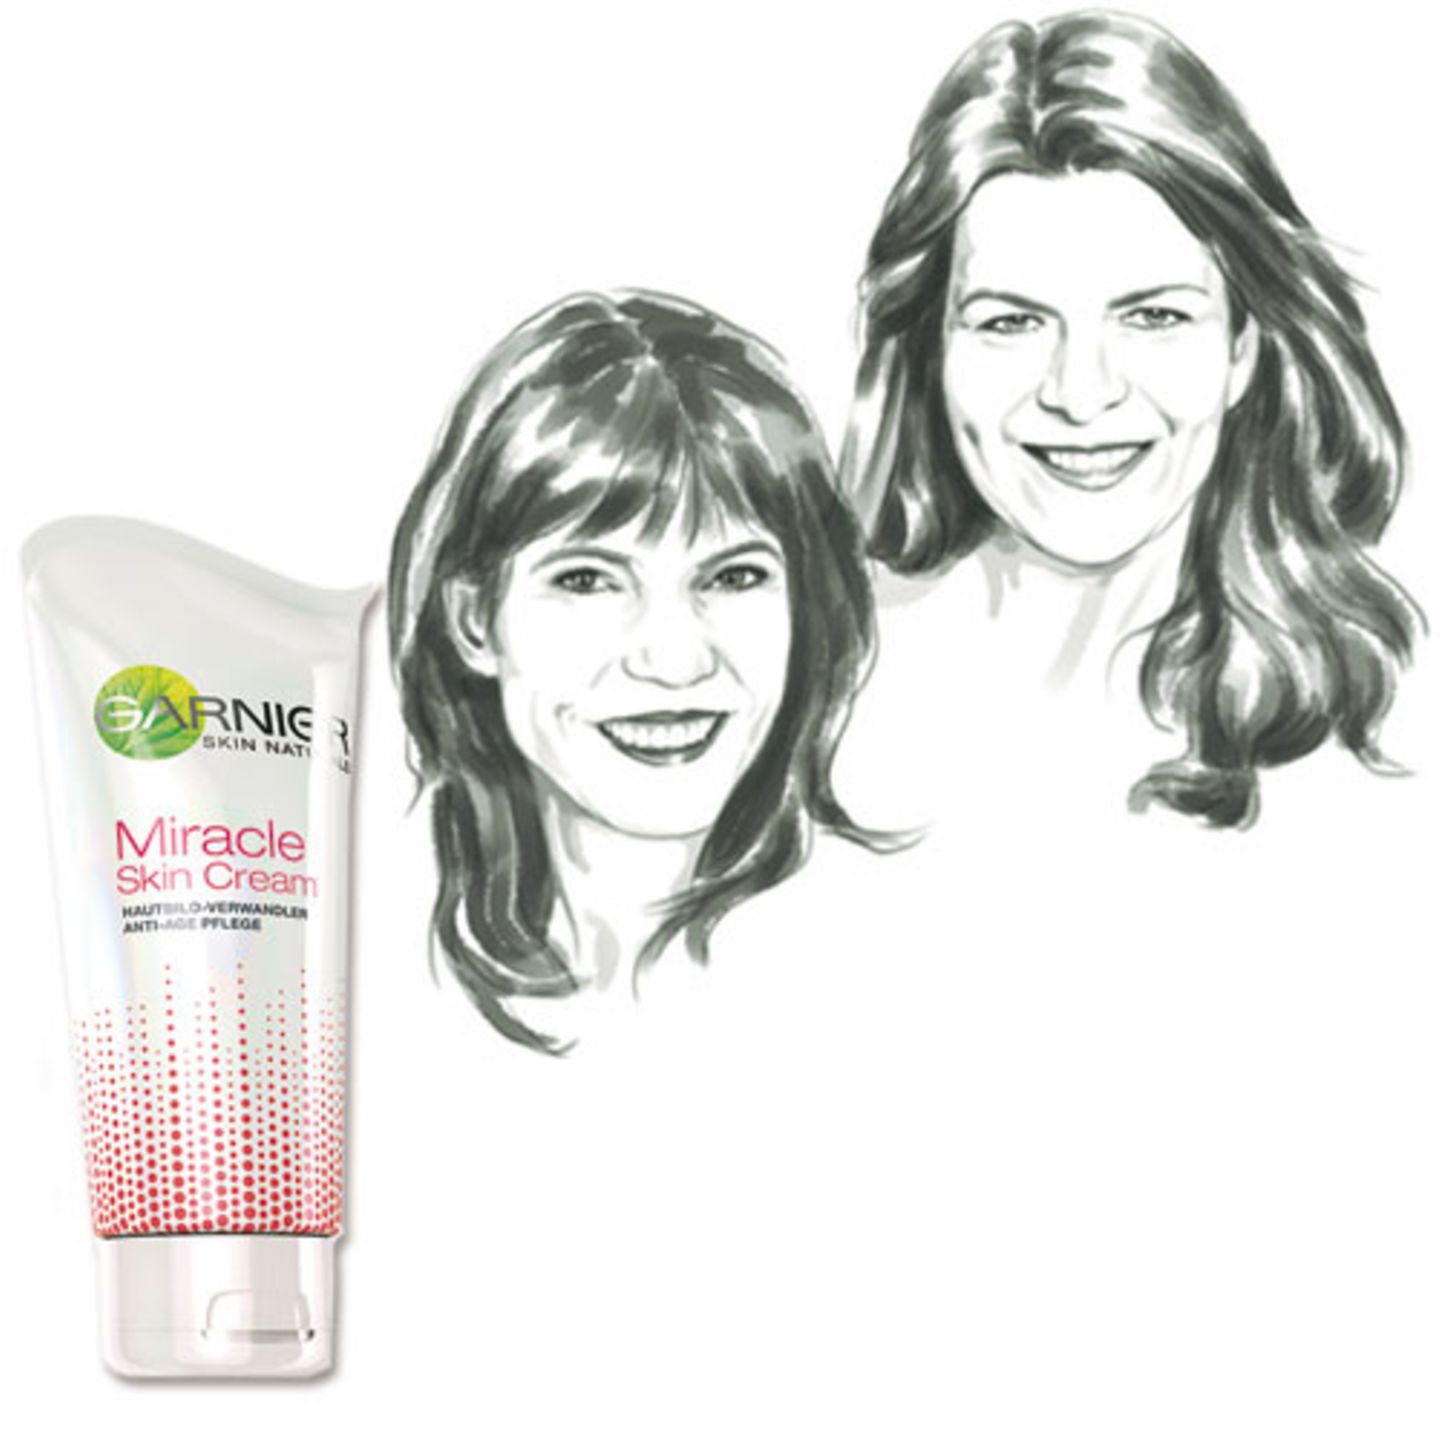 Im Test: "Miracle Skin Cream" von Garnier